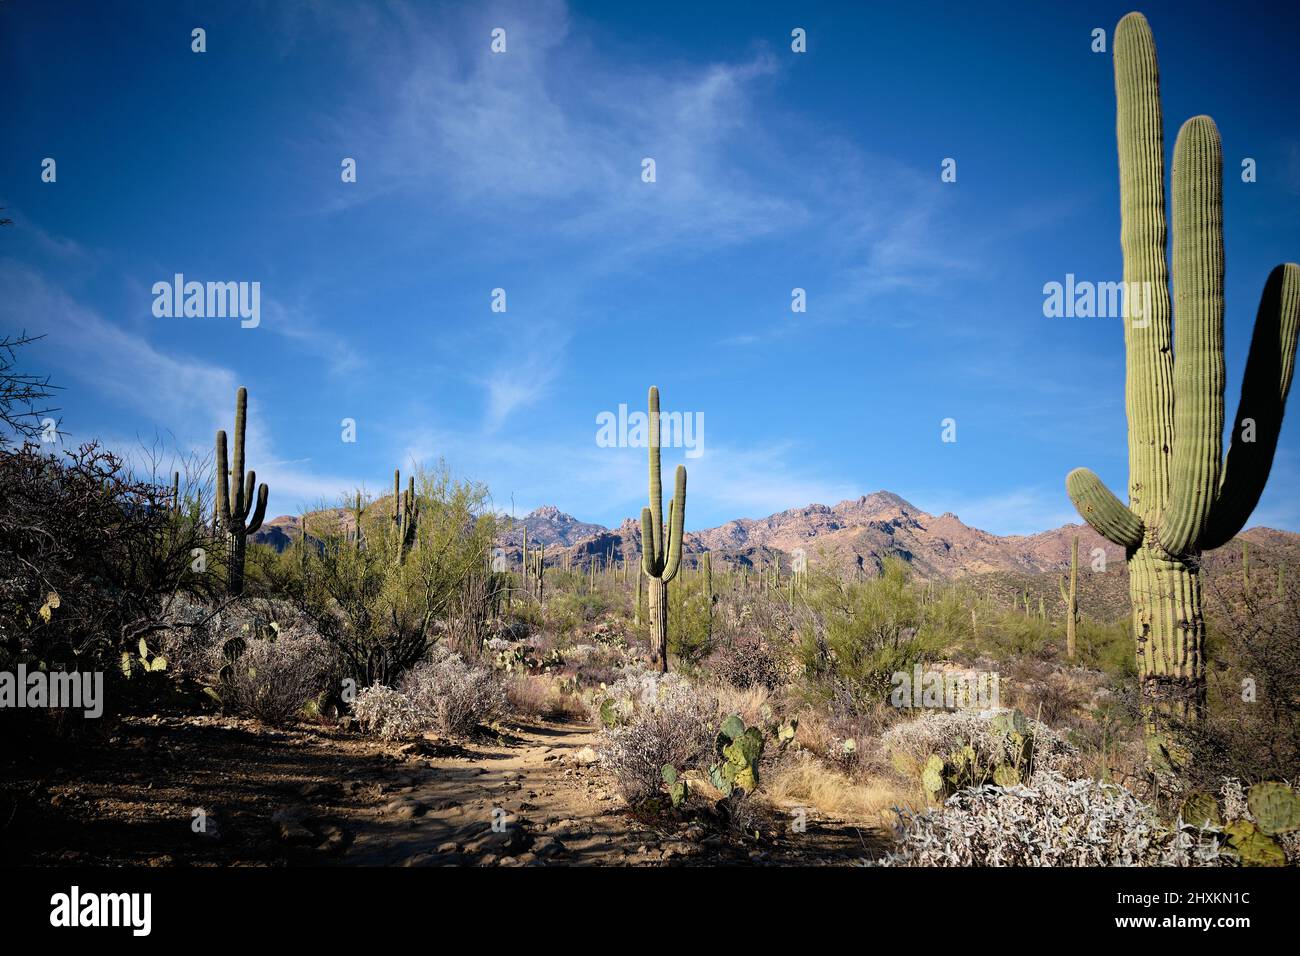 Les grands cactus saguaro pointent vers le haut vers le ciel bleu et les nuages blancs plus sombres. Paysage emblématique du désert d'Arizonan dans l'espace de loisirs de Sabino Canyon, près de Tucson Banque D'Images